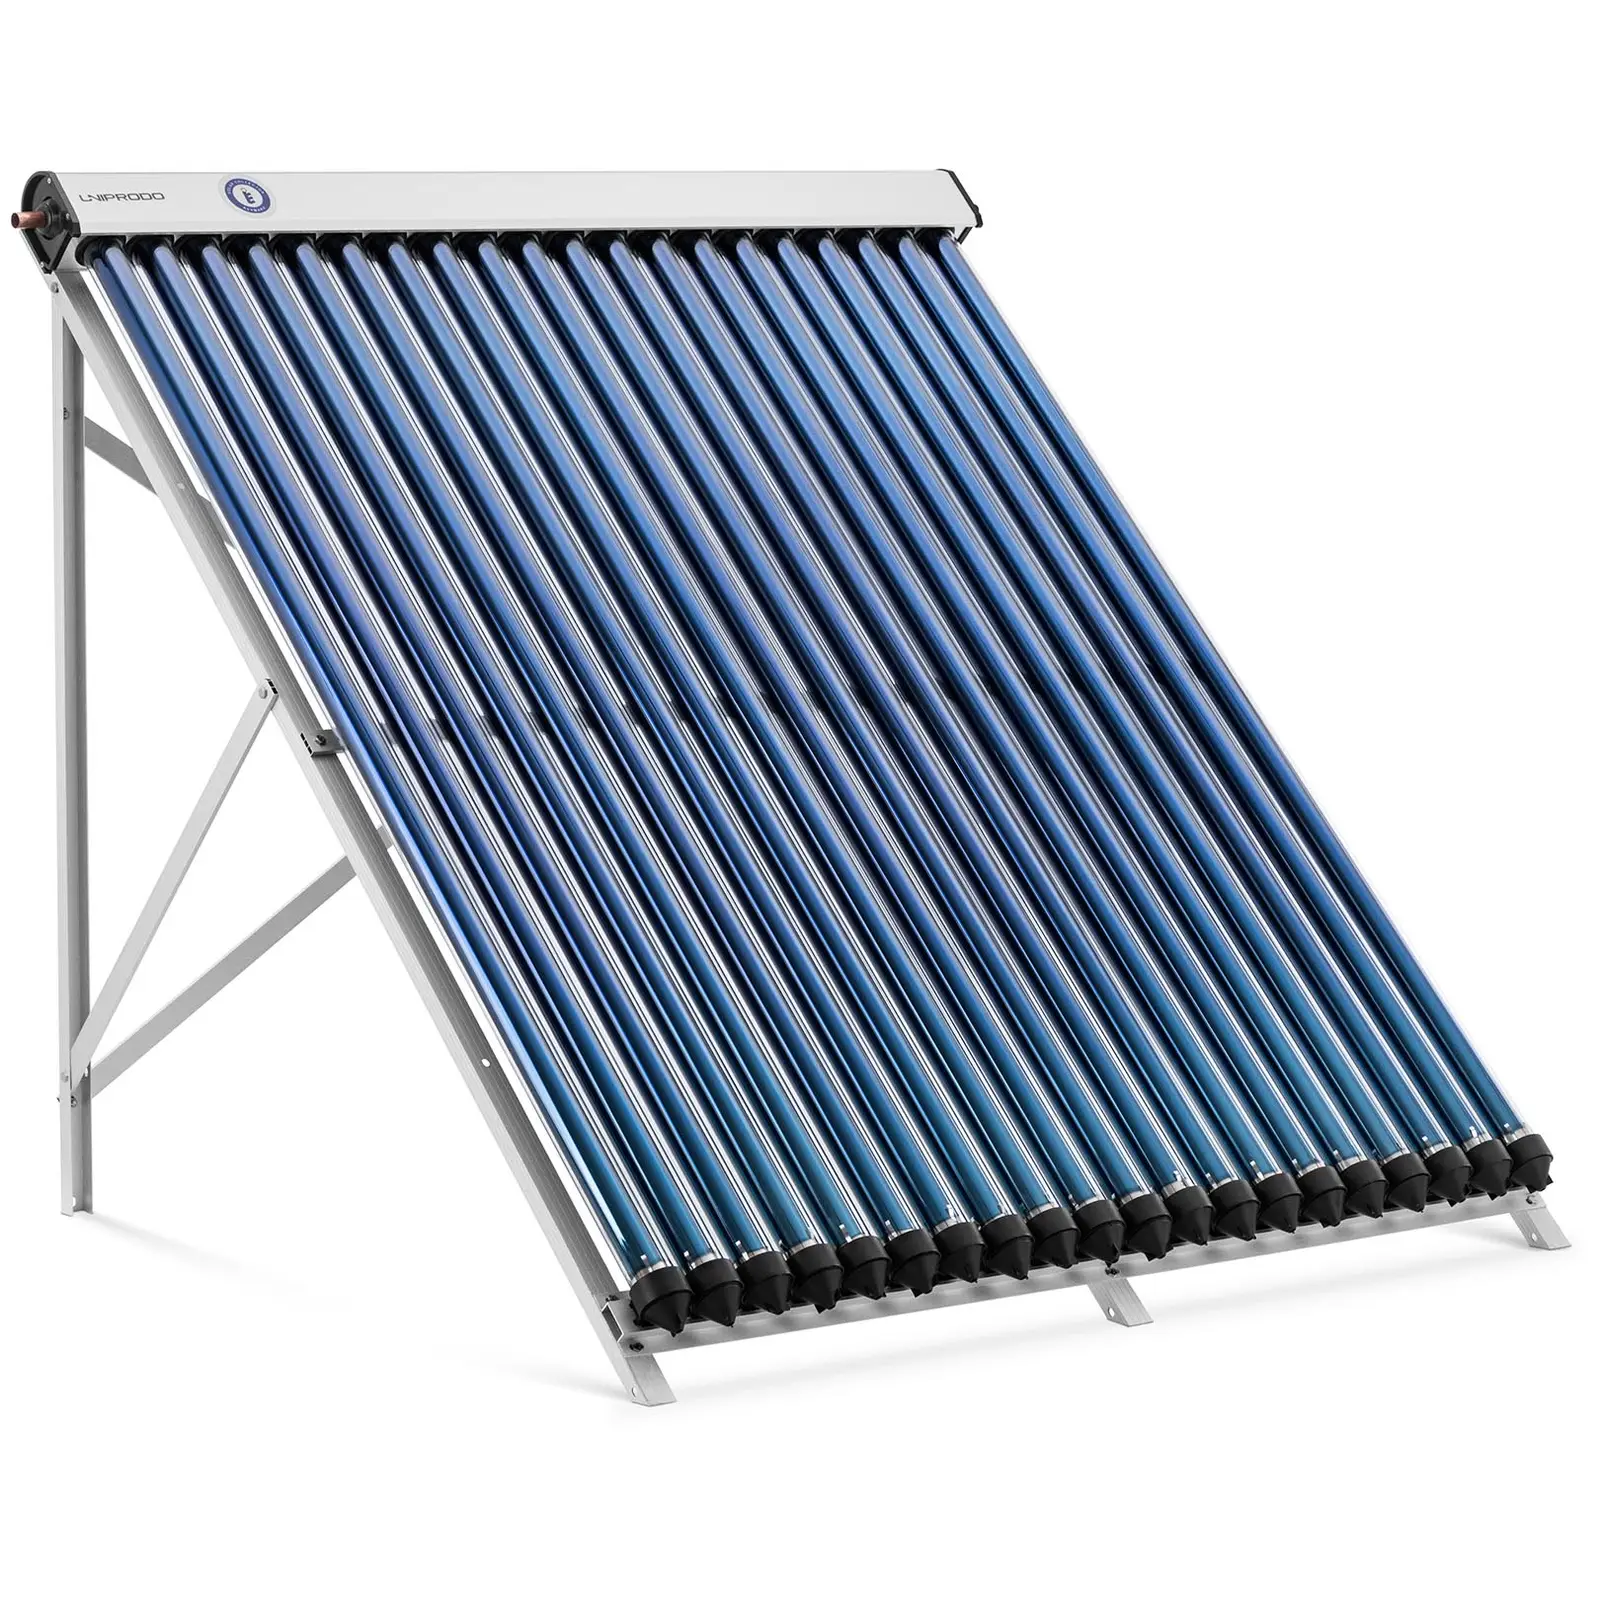 Evakuirani solarni cijevni kolektor - Solarna toplina -20 cijevi -{{max_capacity_2013_temp}} L -1.6 m² --45 - 90 °C